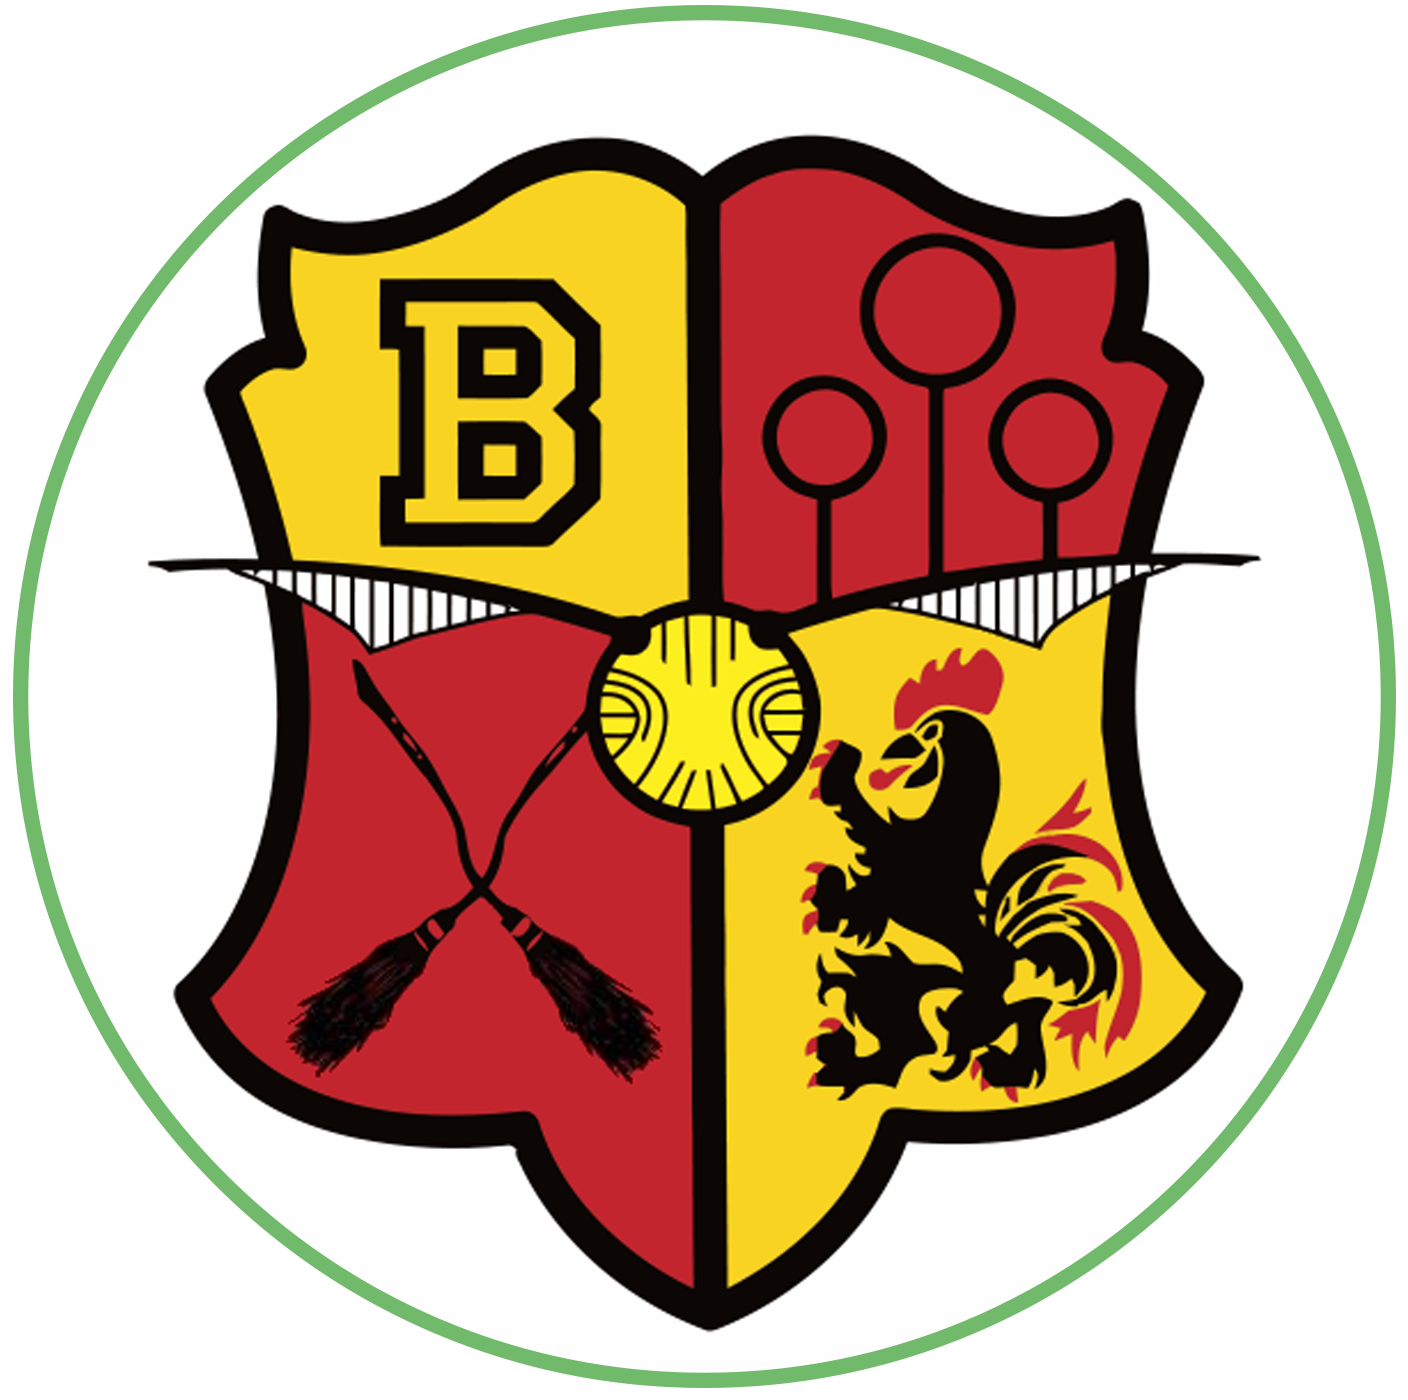 Quadball Belgium logo